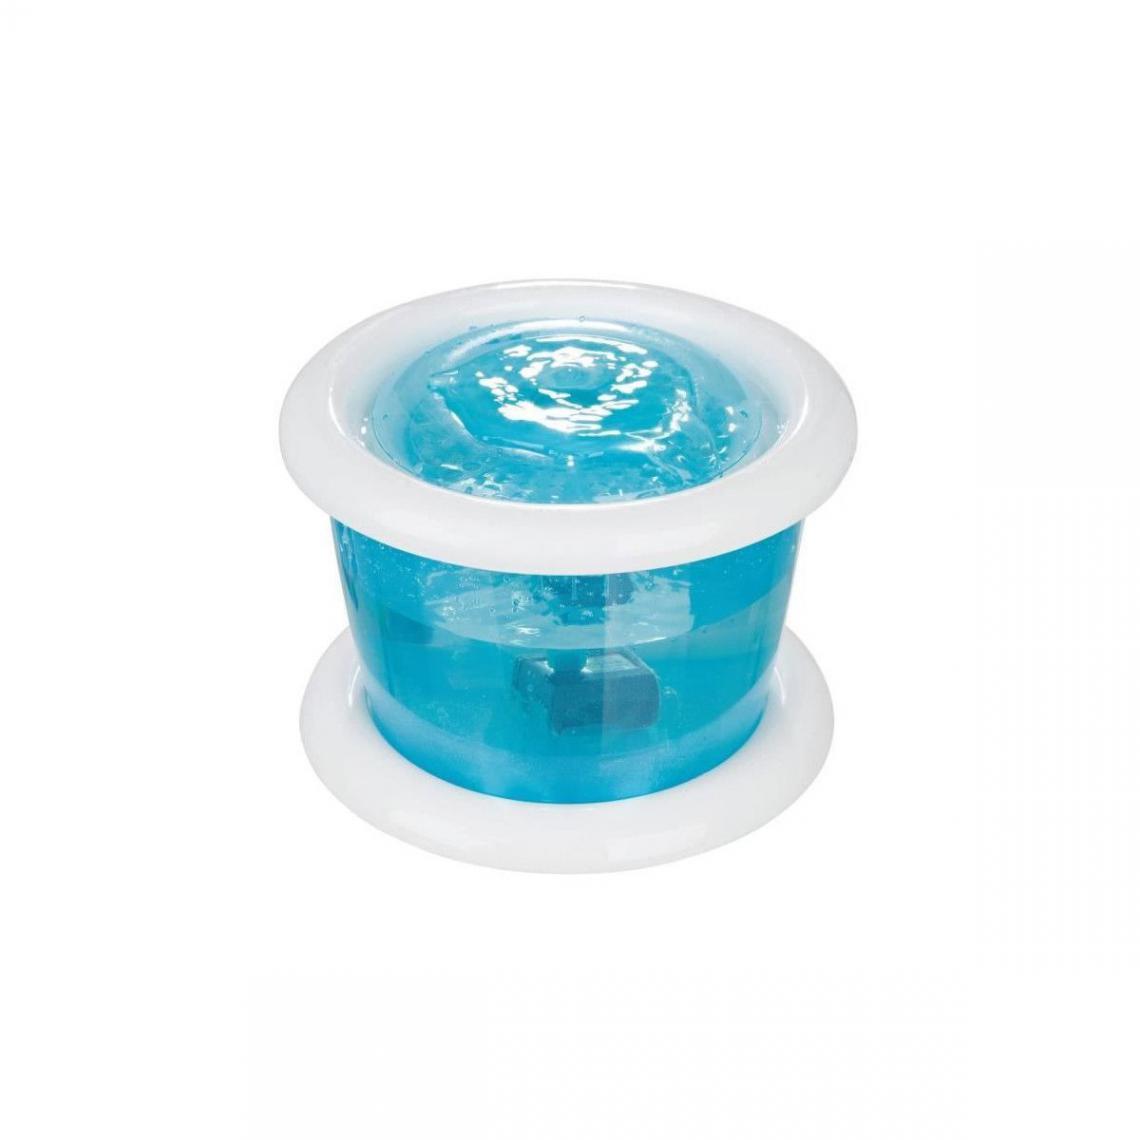 Trixie - Trixie Distributeur Automatique Deau Bubble Stream 3l - Bleu Et Blanc - Pour Chien - Gamelle pour chien